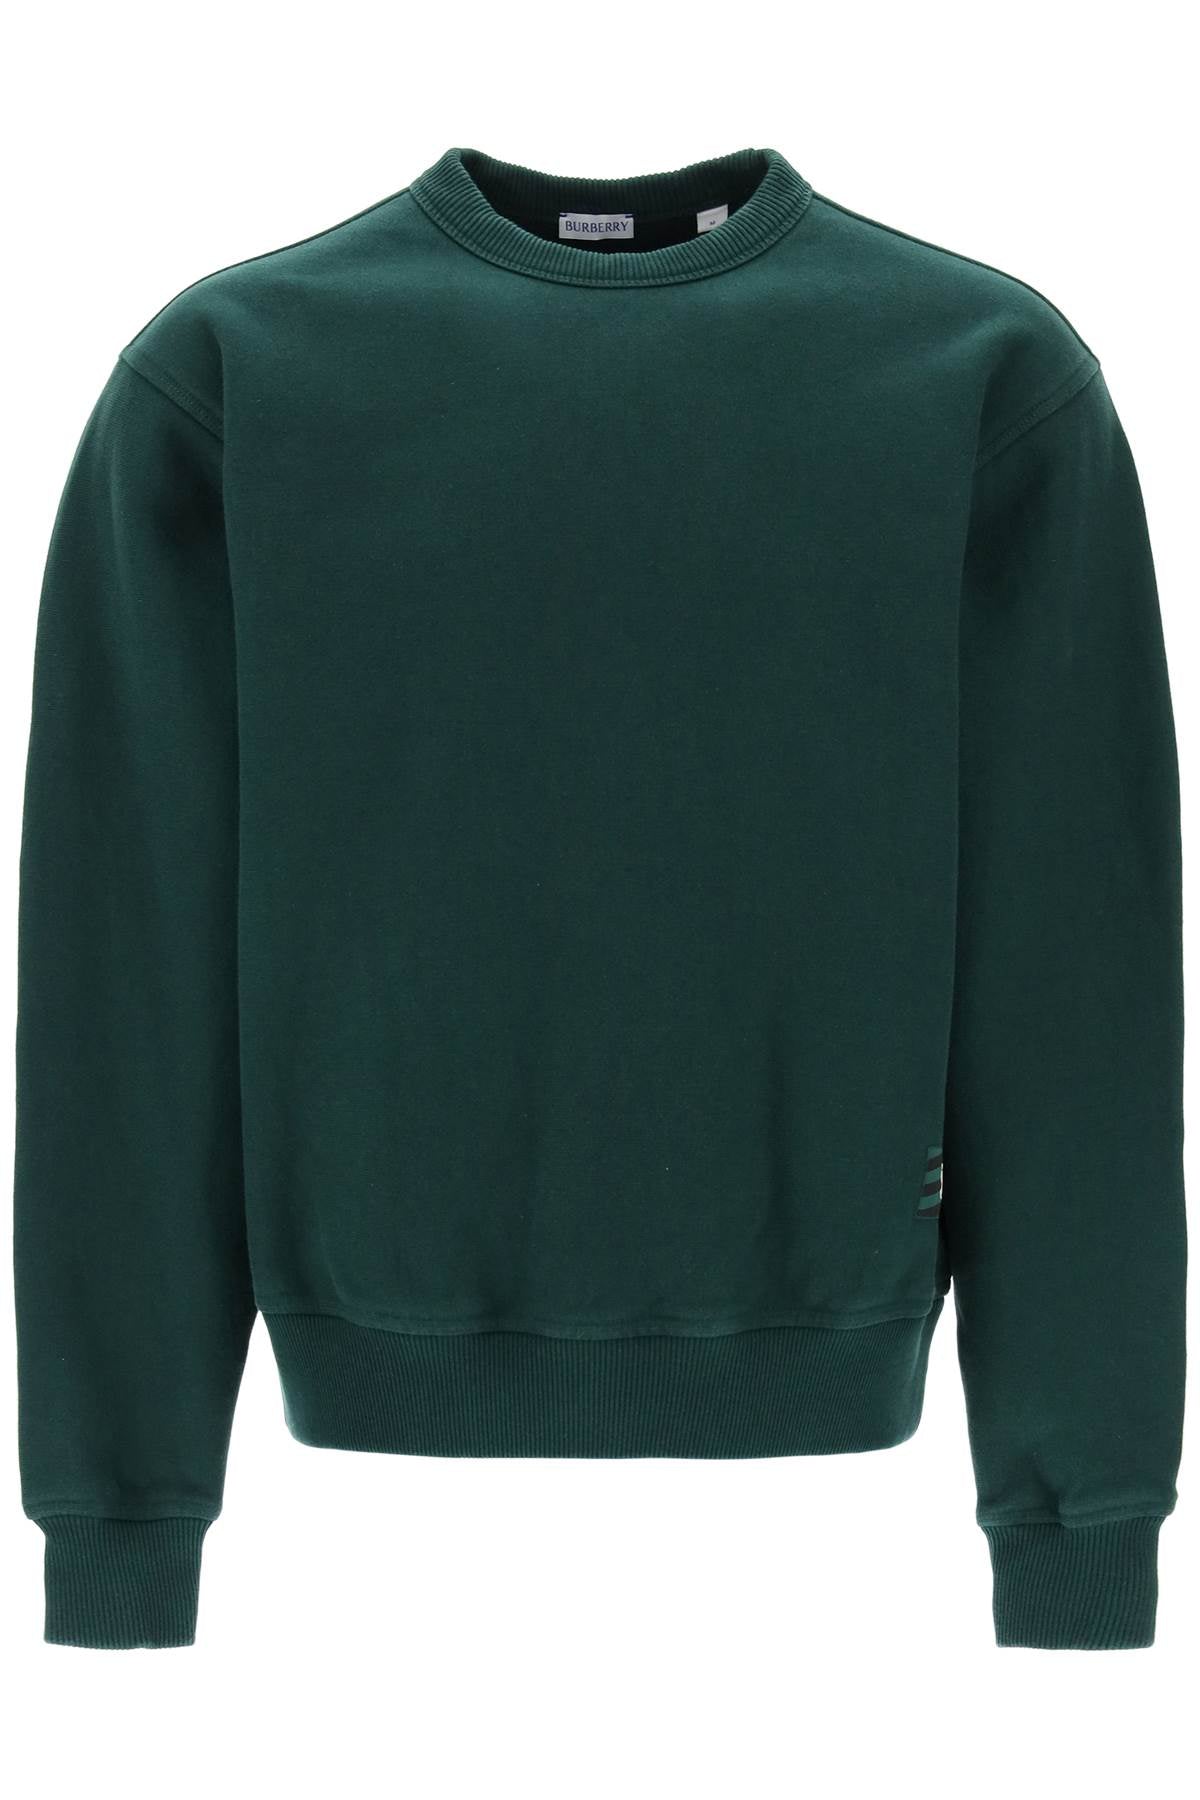 Shop Burberry Green Oversized Crewneck Sweatshirt For Men